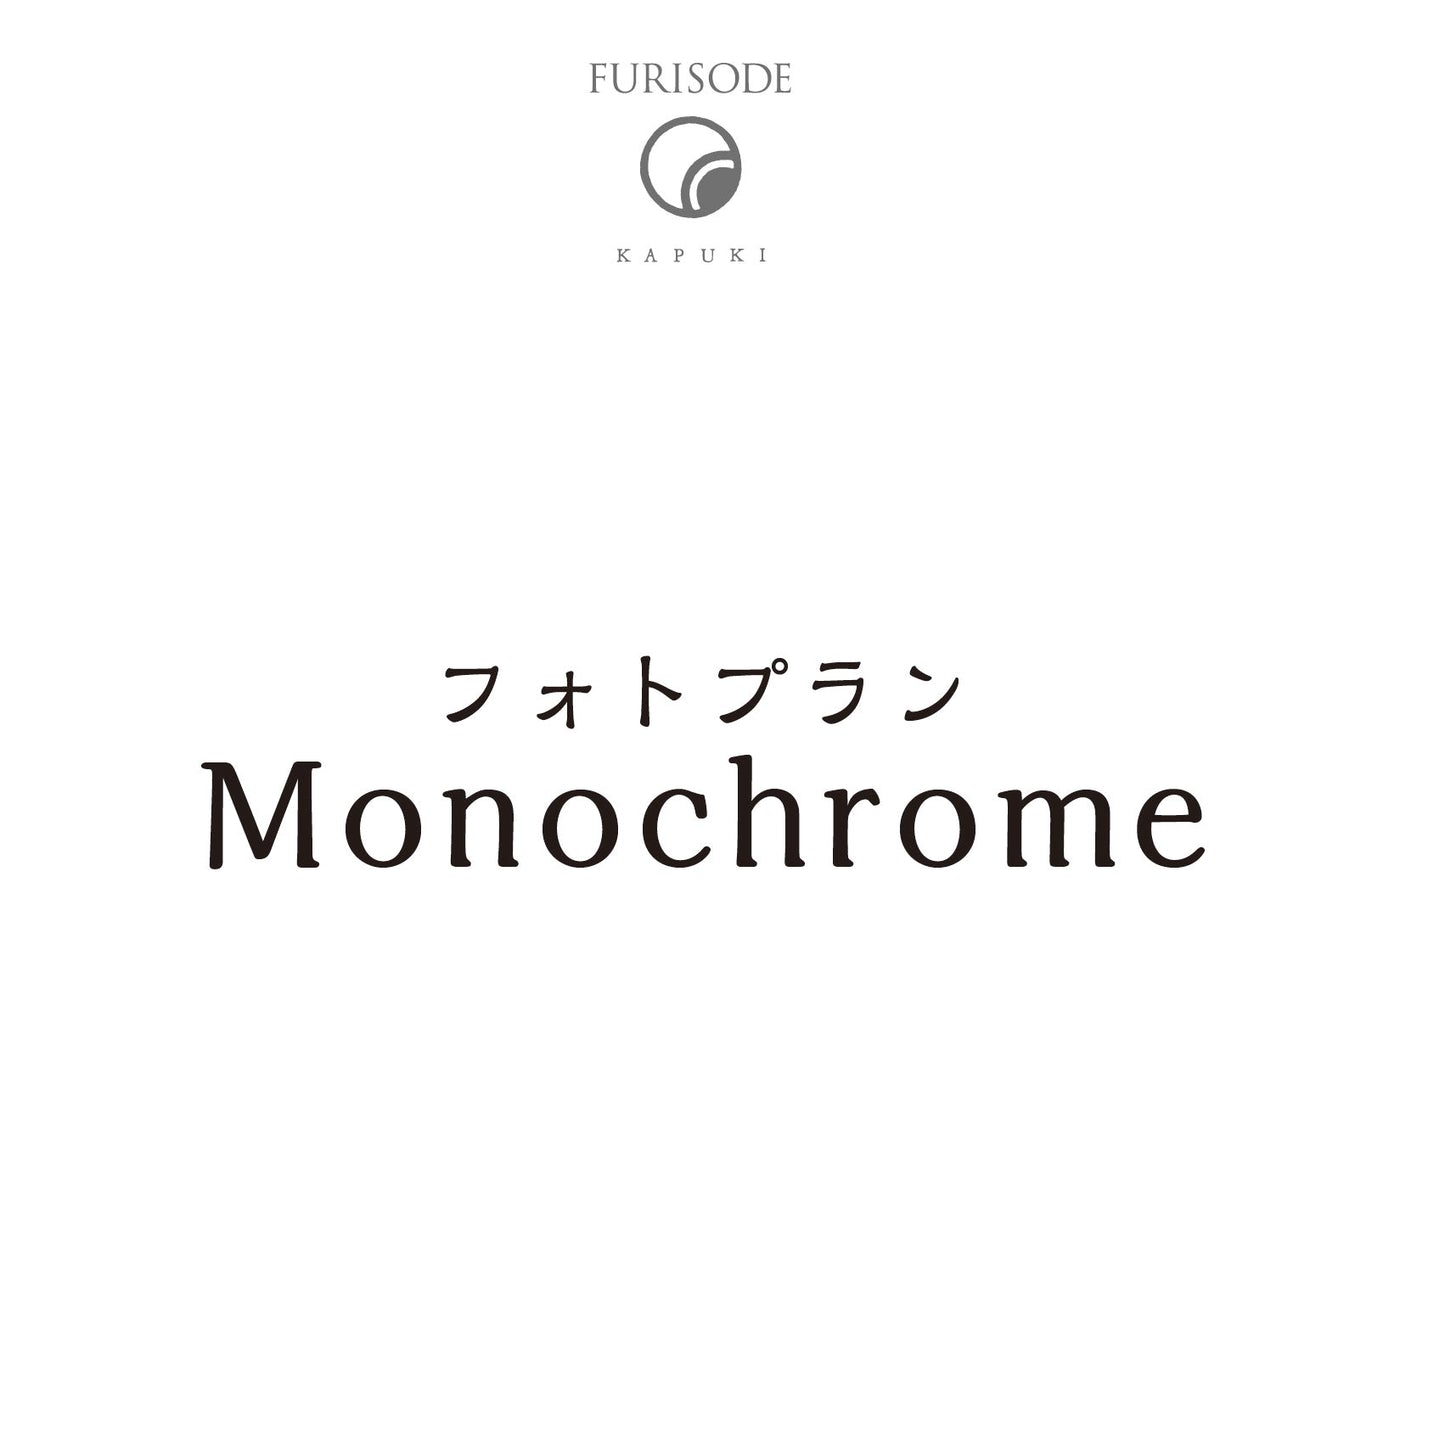 フォトプラン Monochrome